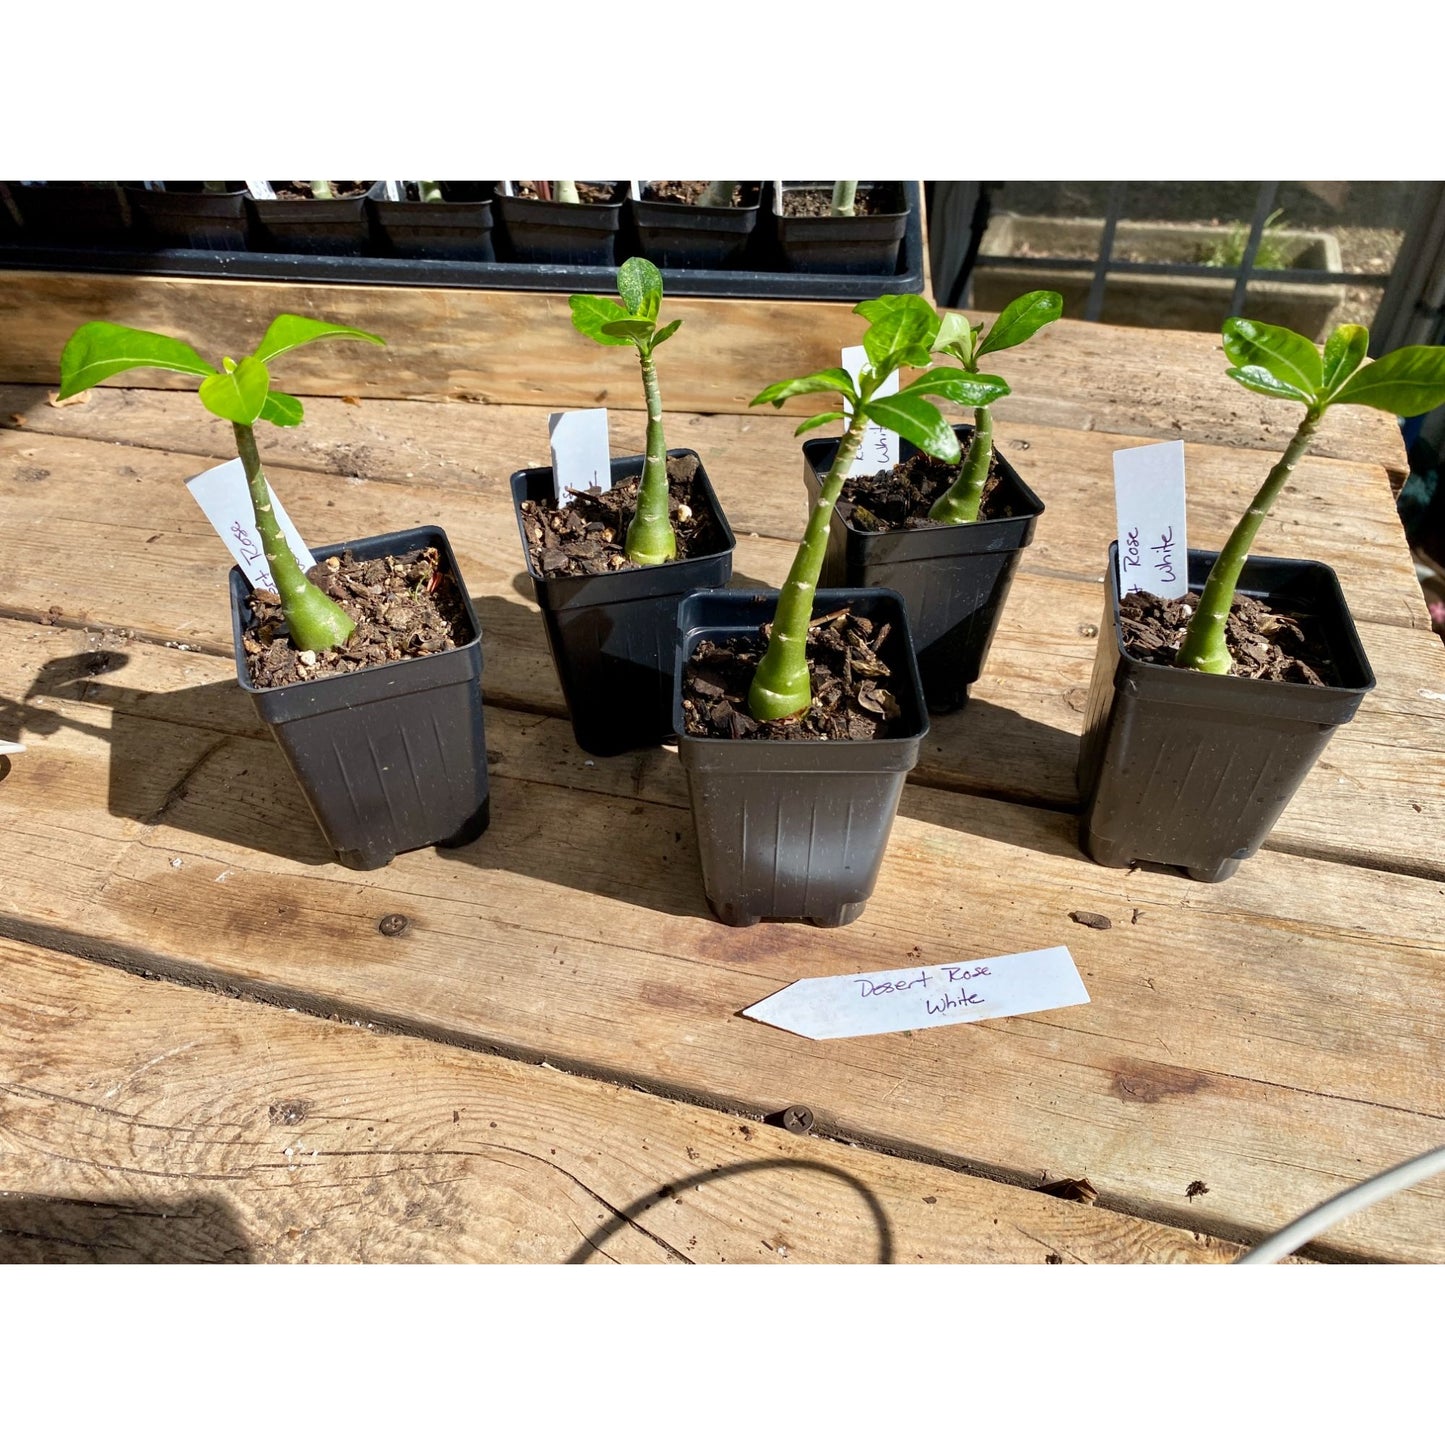 Desert Rose or Adenium White 2.5" Tall Pot Live Plant